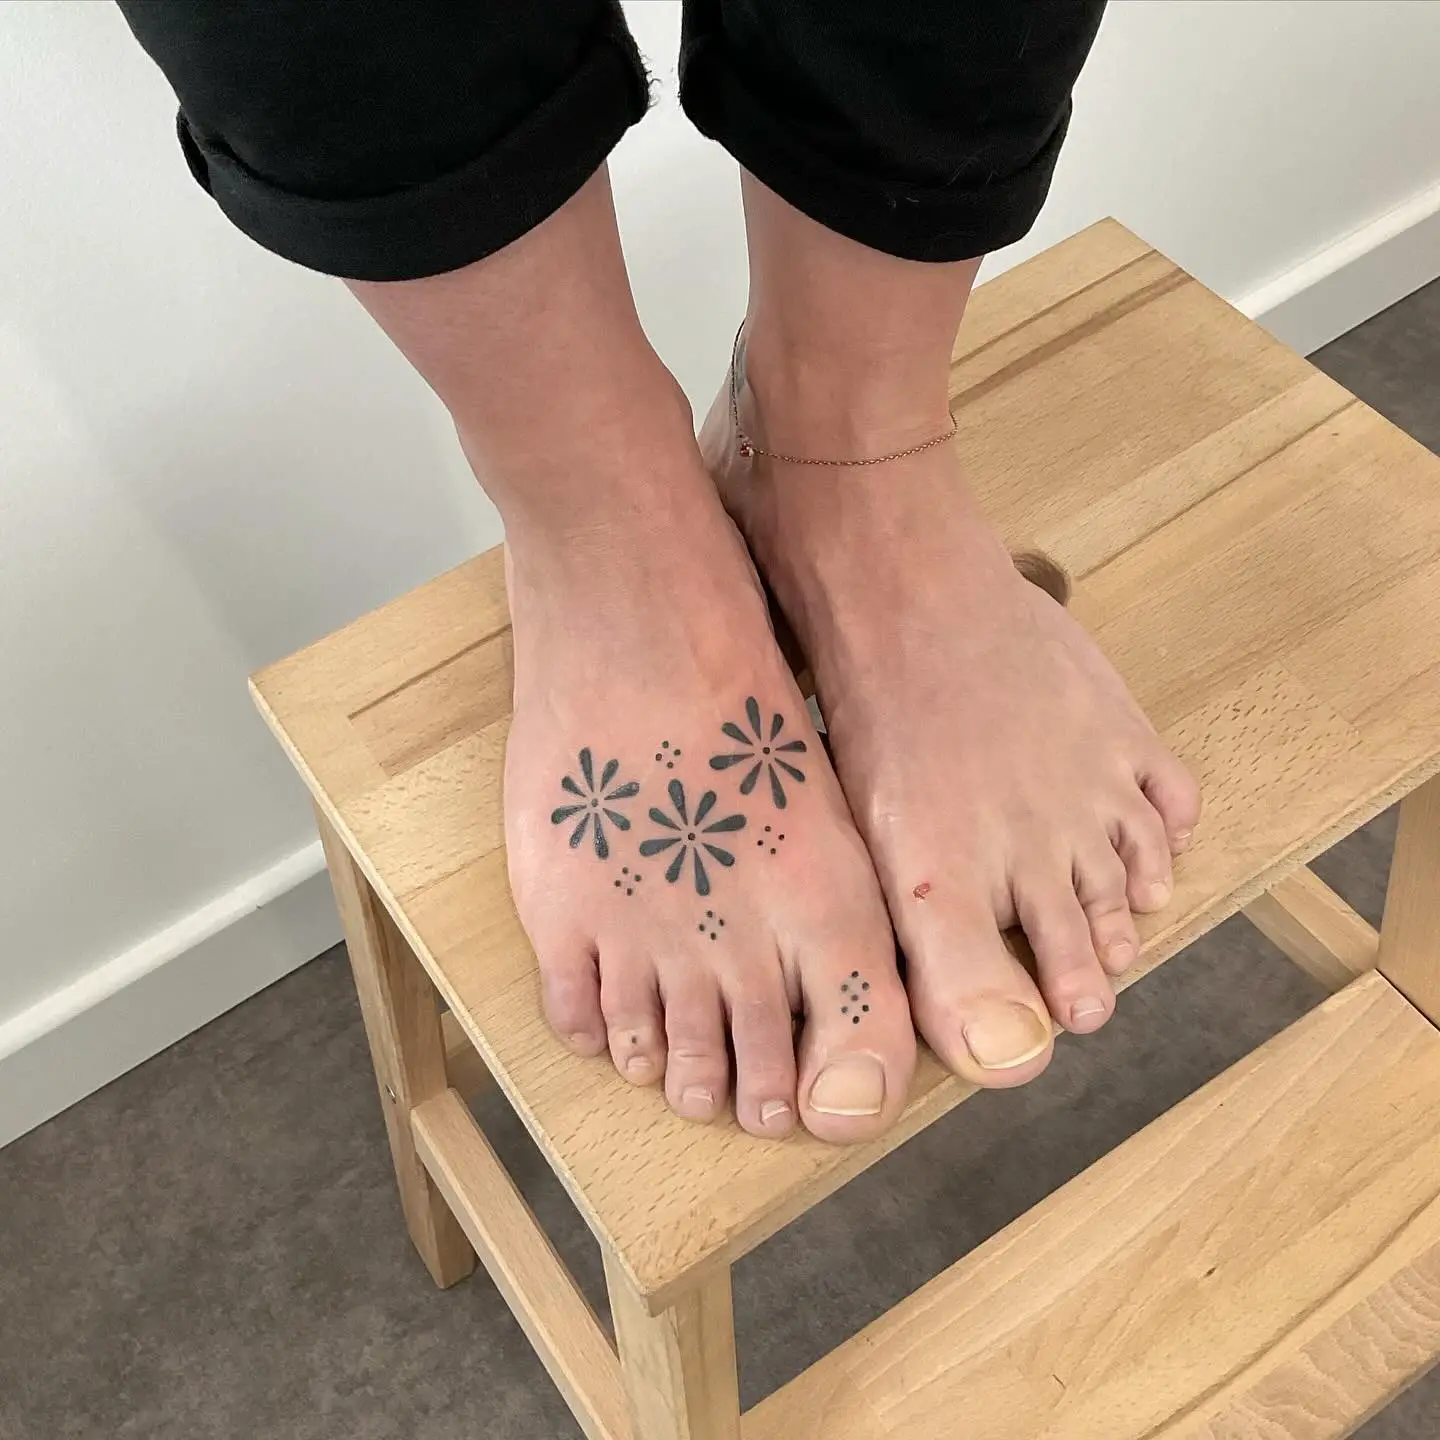 Small feet tattoo ideas by l0l0tate.ttt